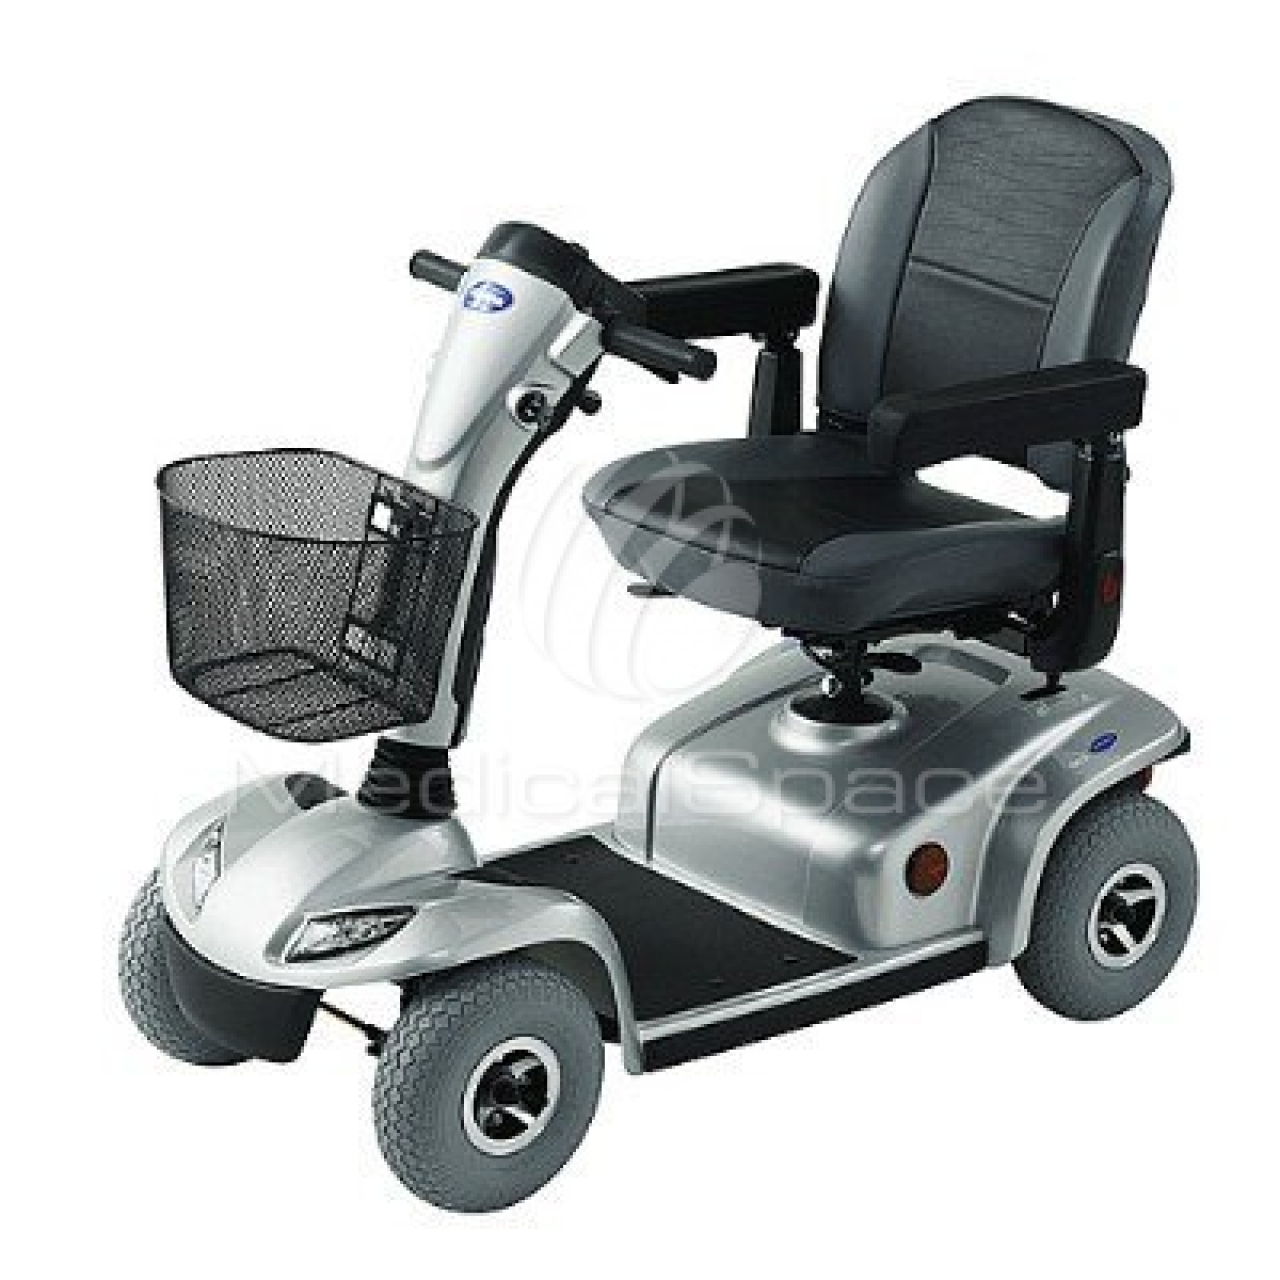 Скутер для инвалидов и пожилых. Sterling Elite Mobility Scooter. TGA Mobility Breeze Midi 3 Wheel 8 mph Mobility Scooter. Кресло-коляска Invacare. Электроскутер для инвалидов.